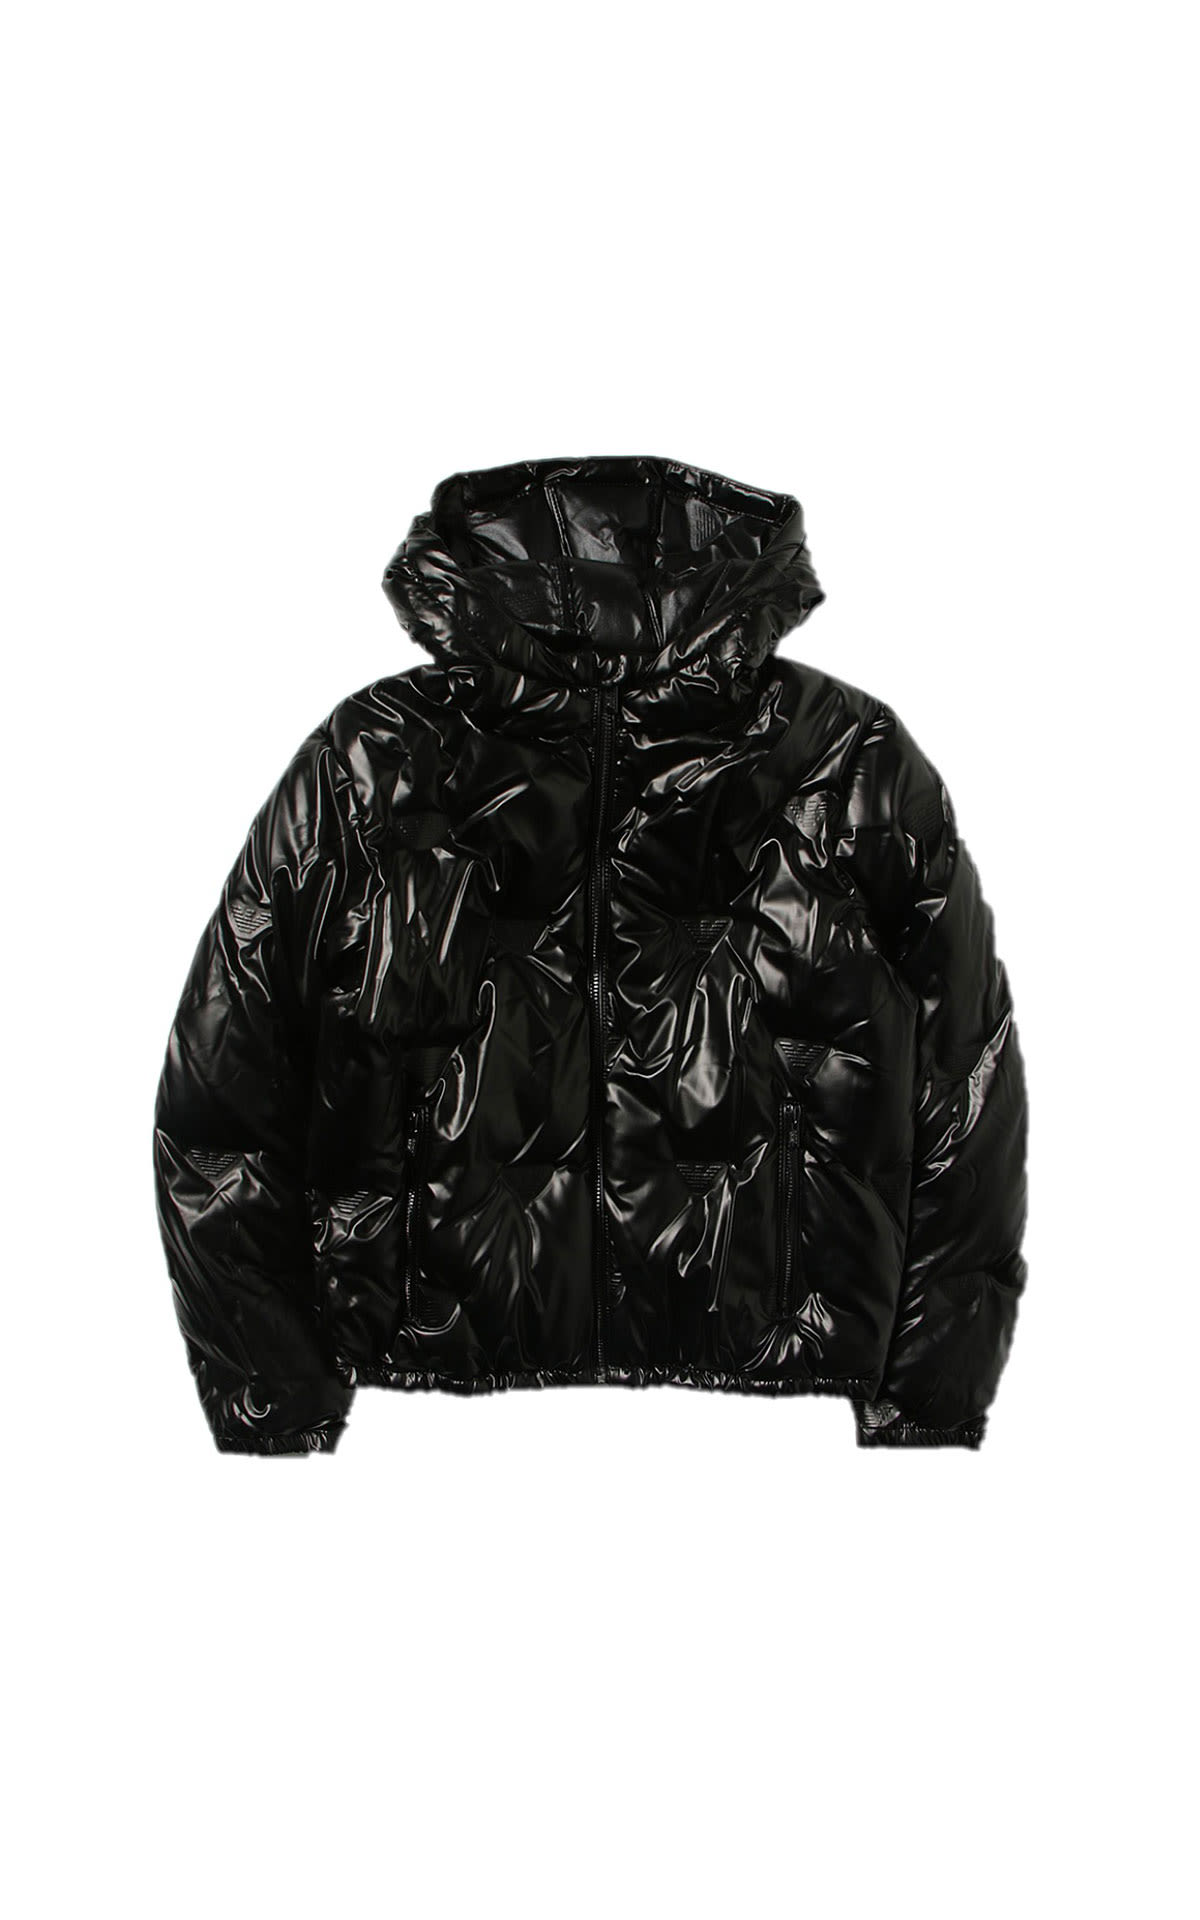 Armani Black jacket